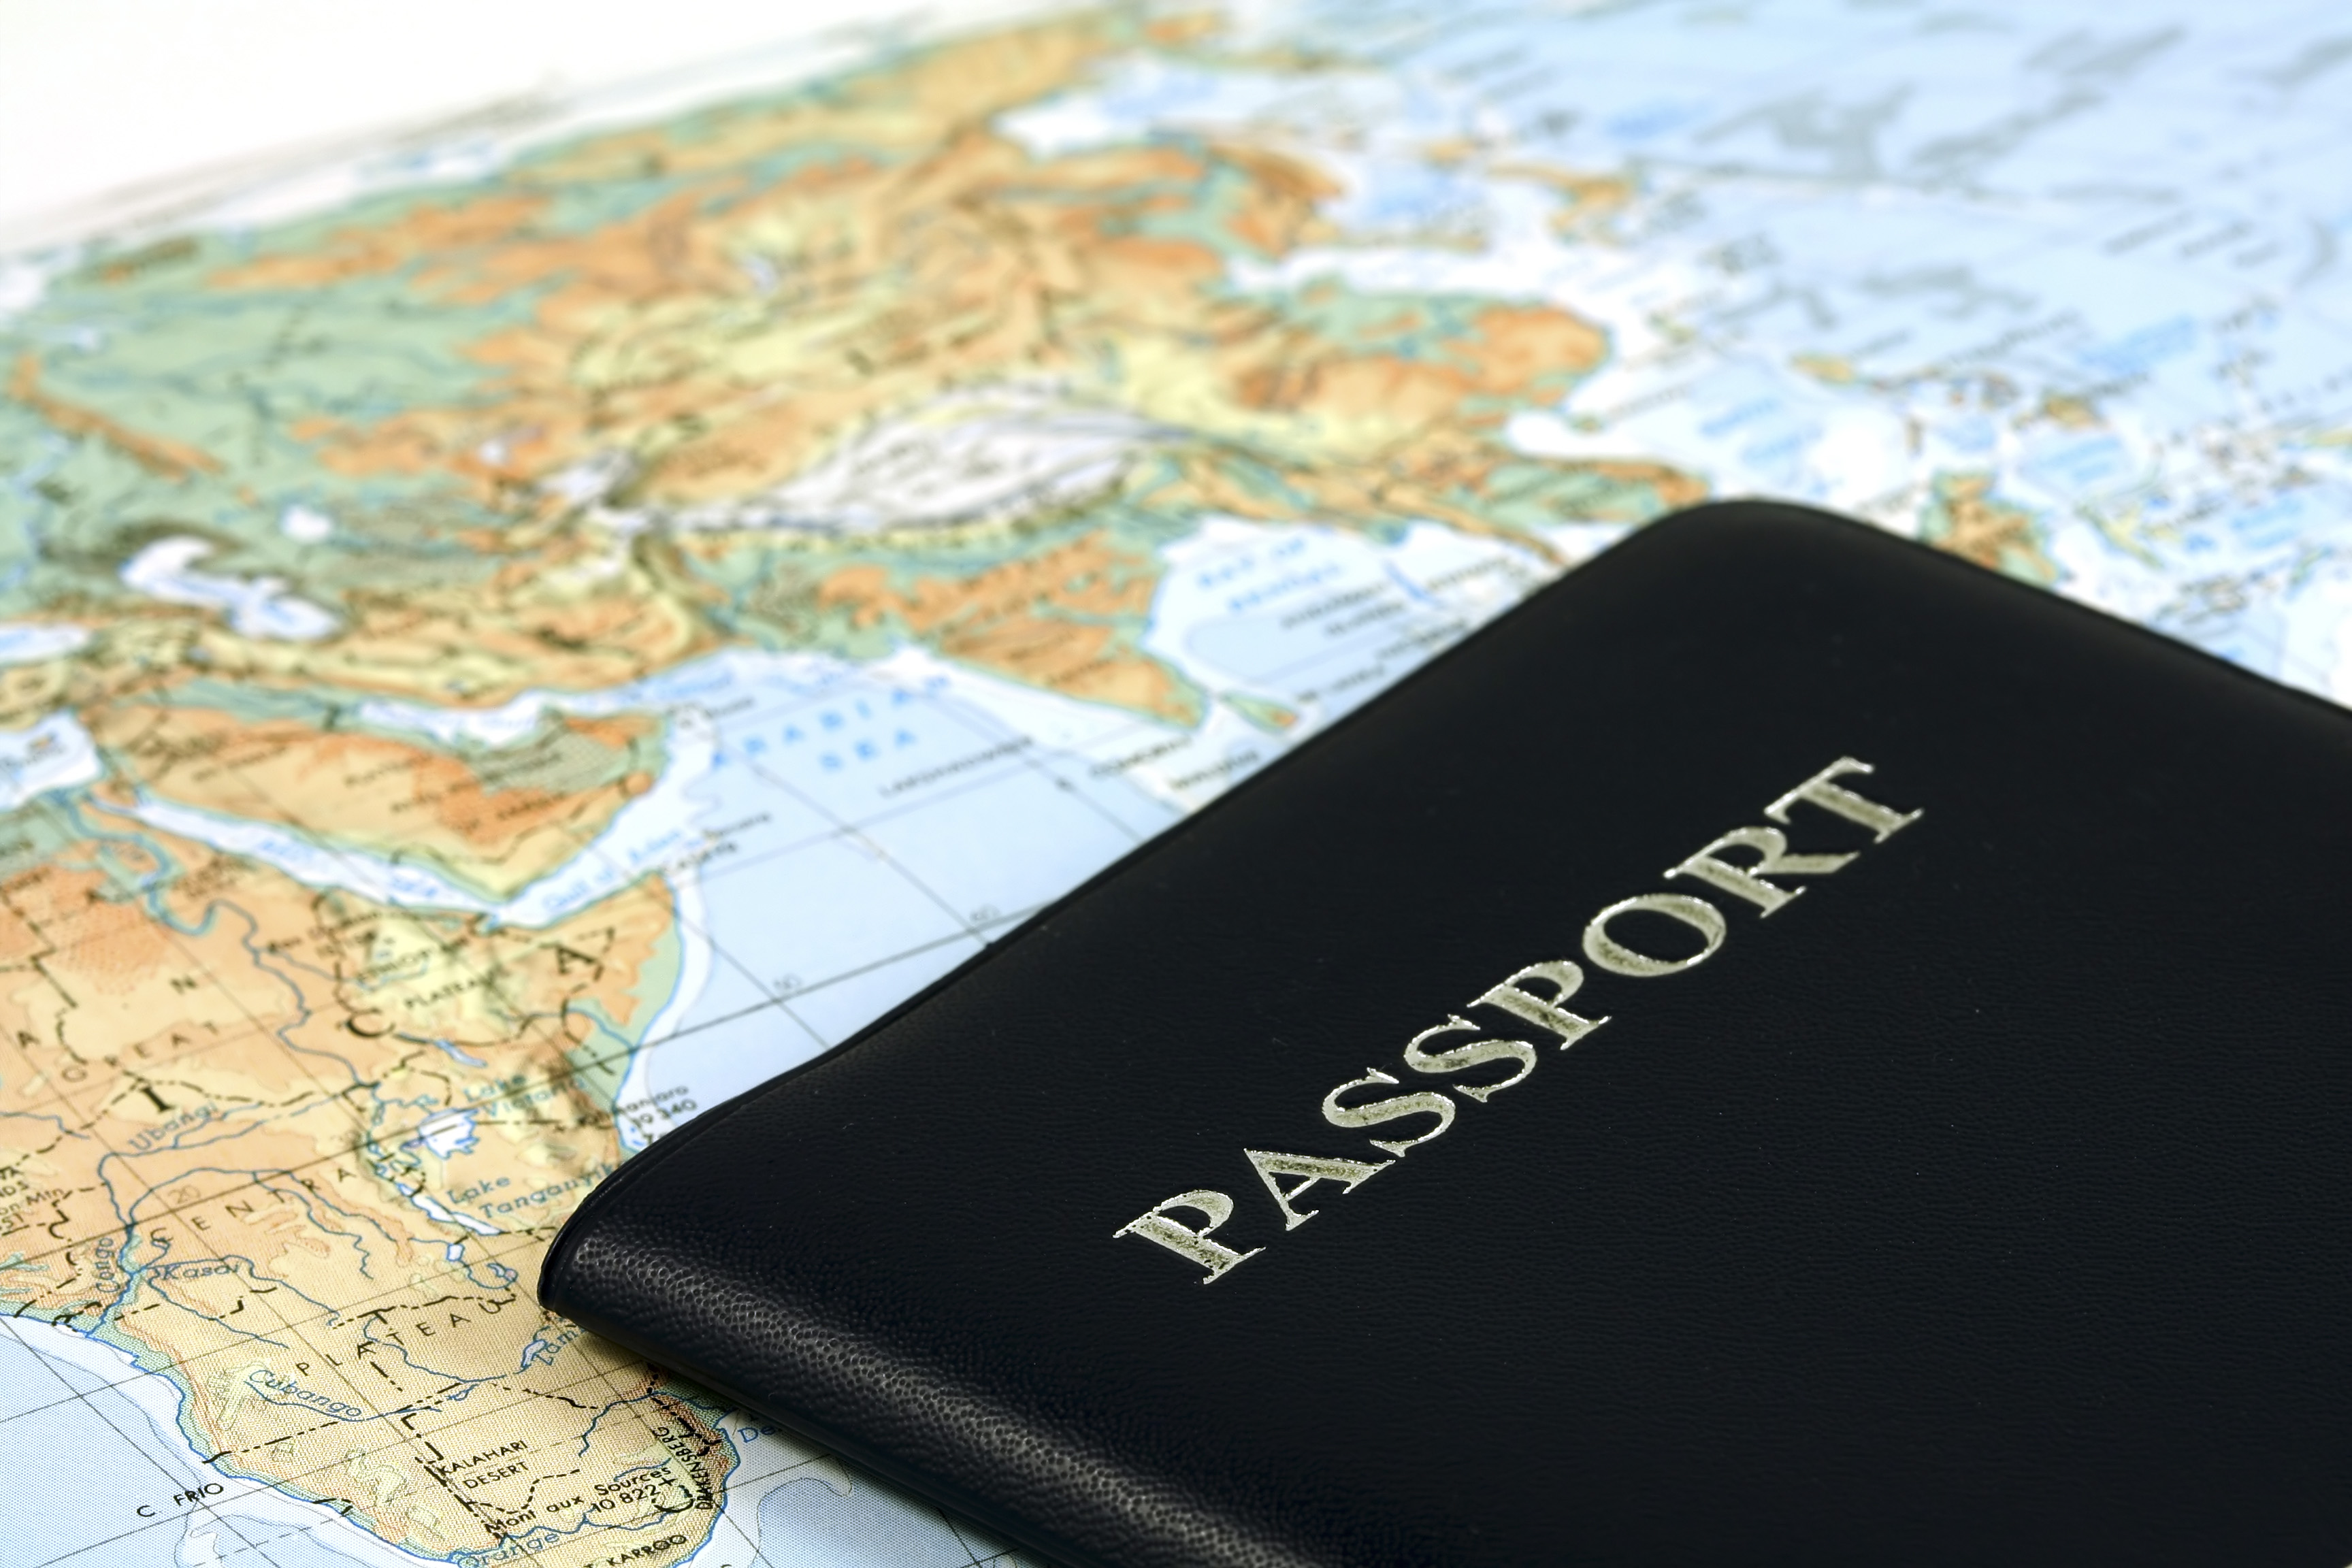 Azerbaijan detains foreigners with fake visas